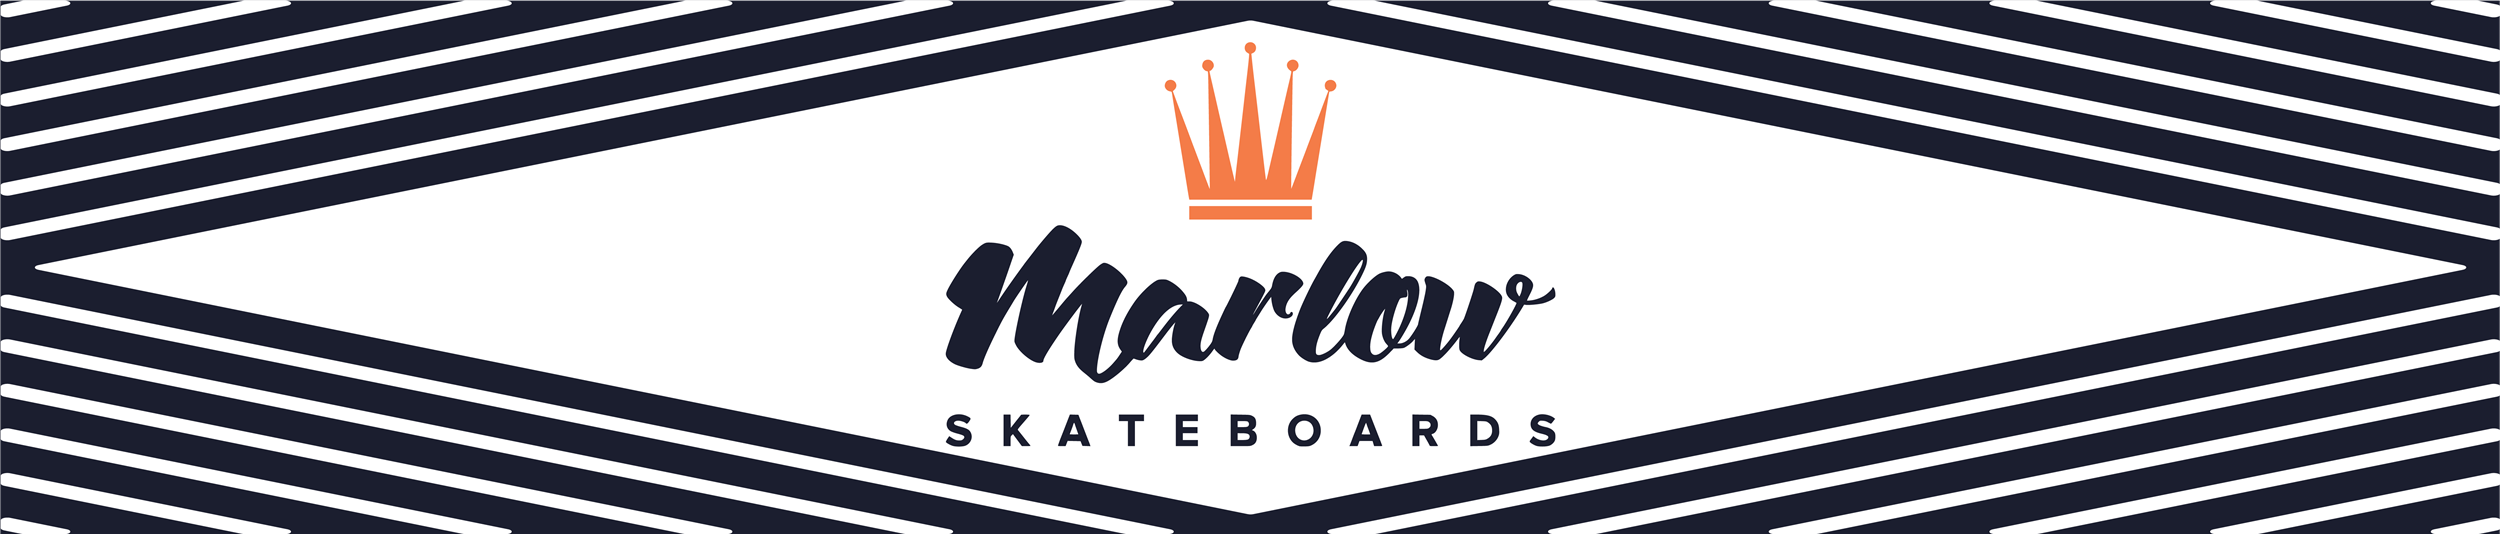 Marlow Skateboards